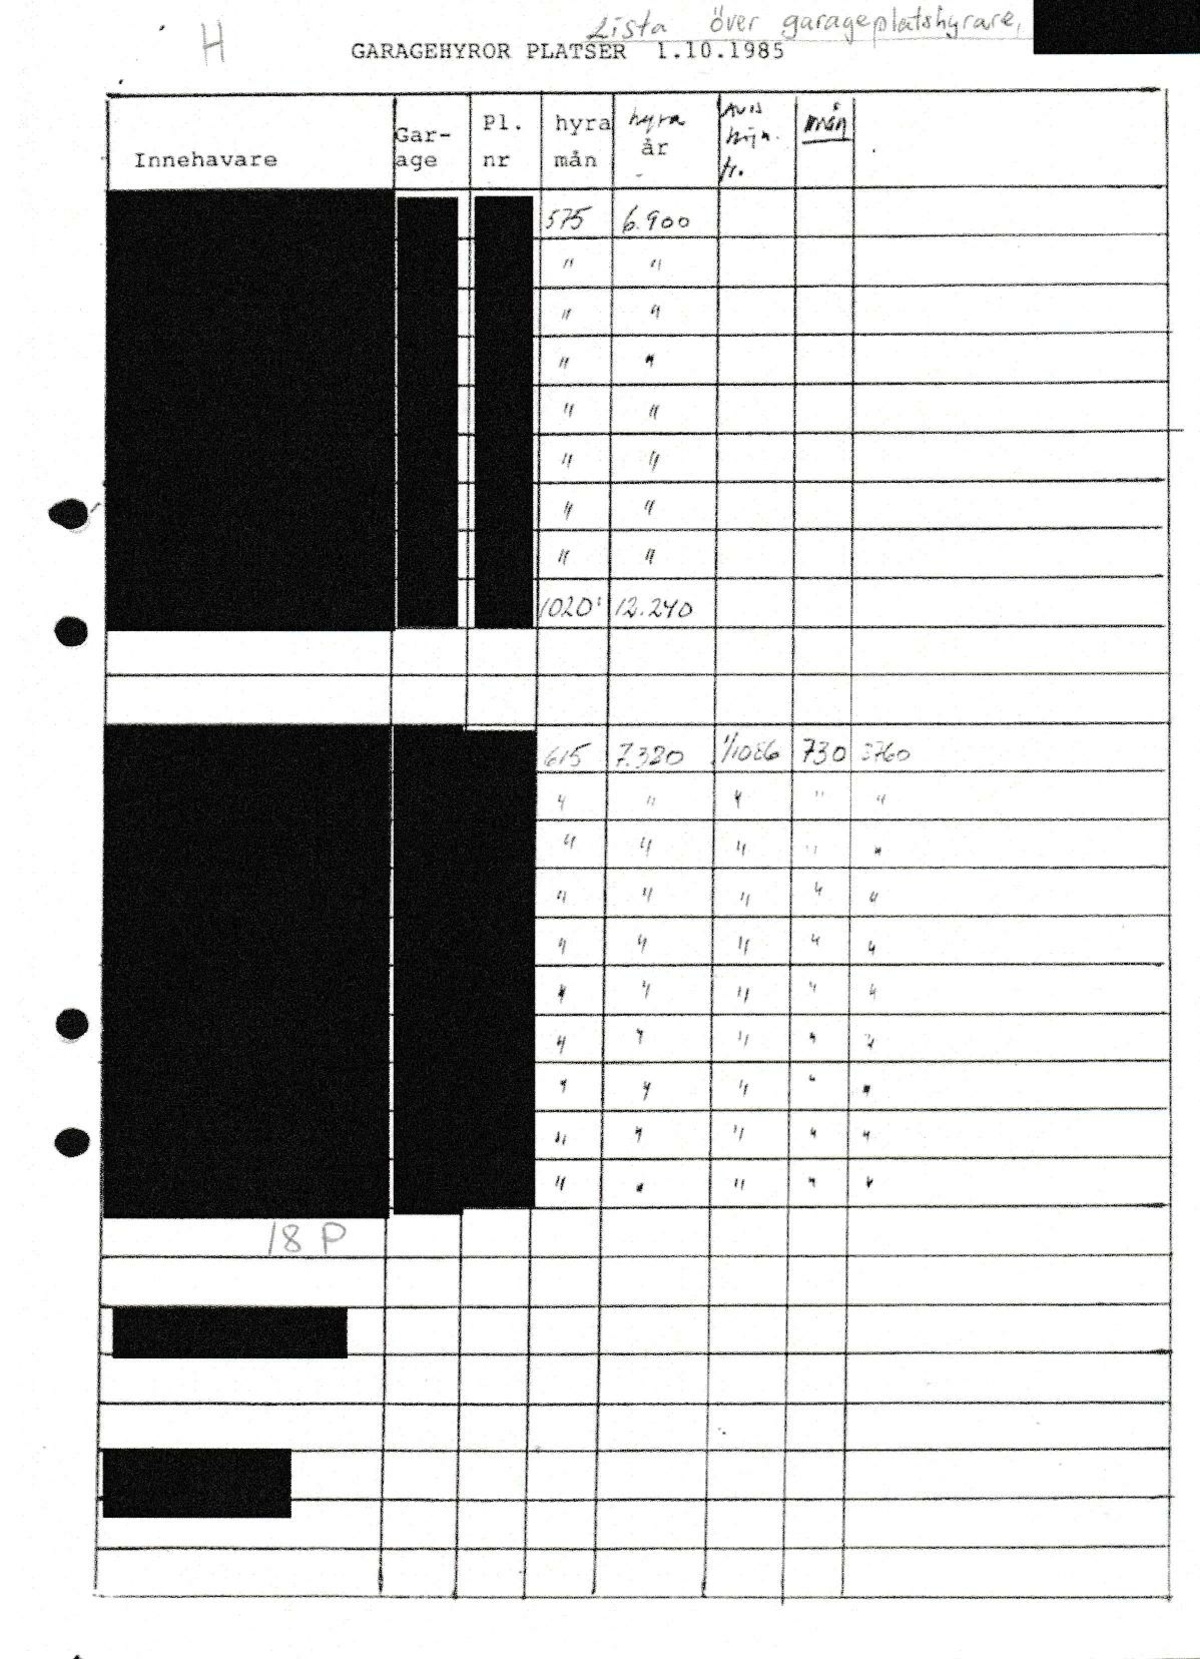 Pol-1986-03-19 EAA4057-00 Dörrknackning-garageplatsuthyrare-WT-Grand.pdf